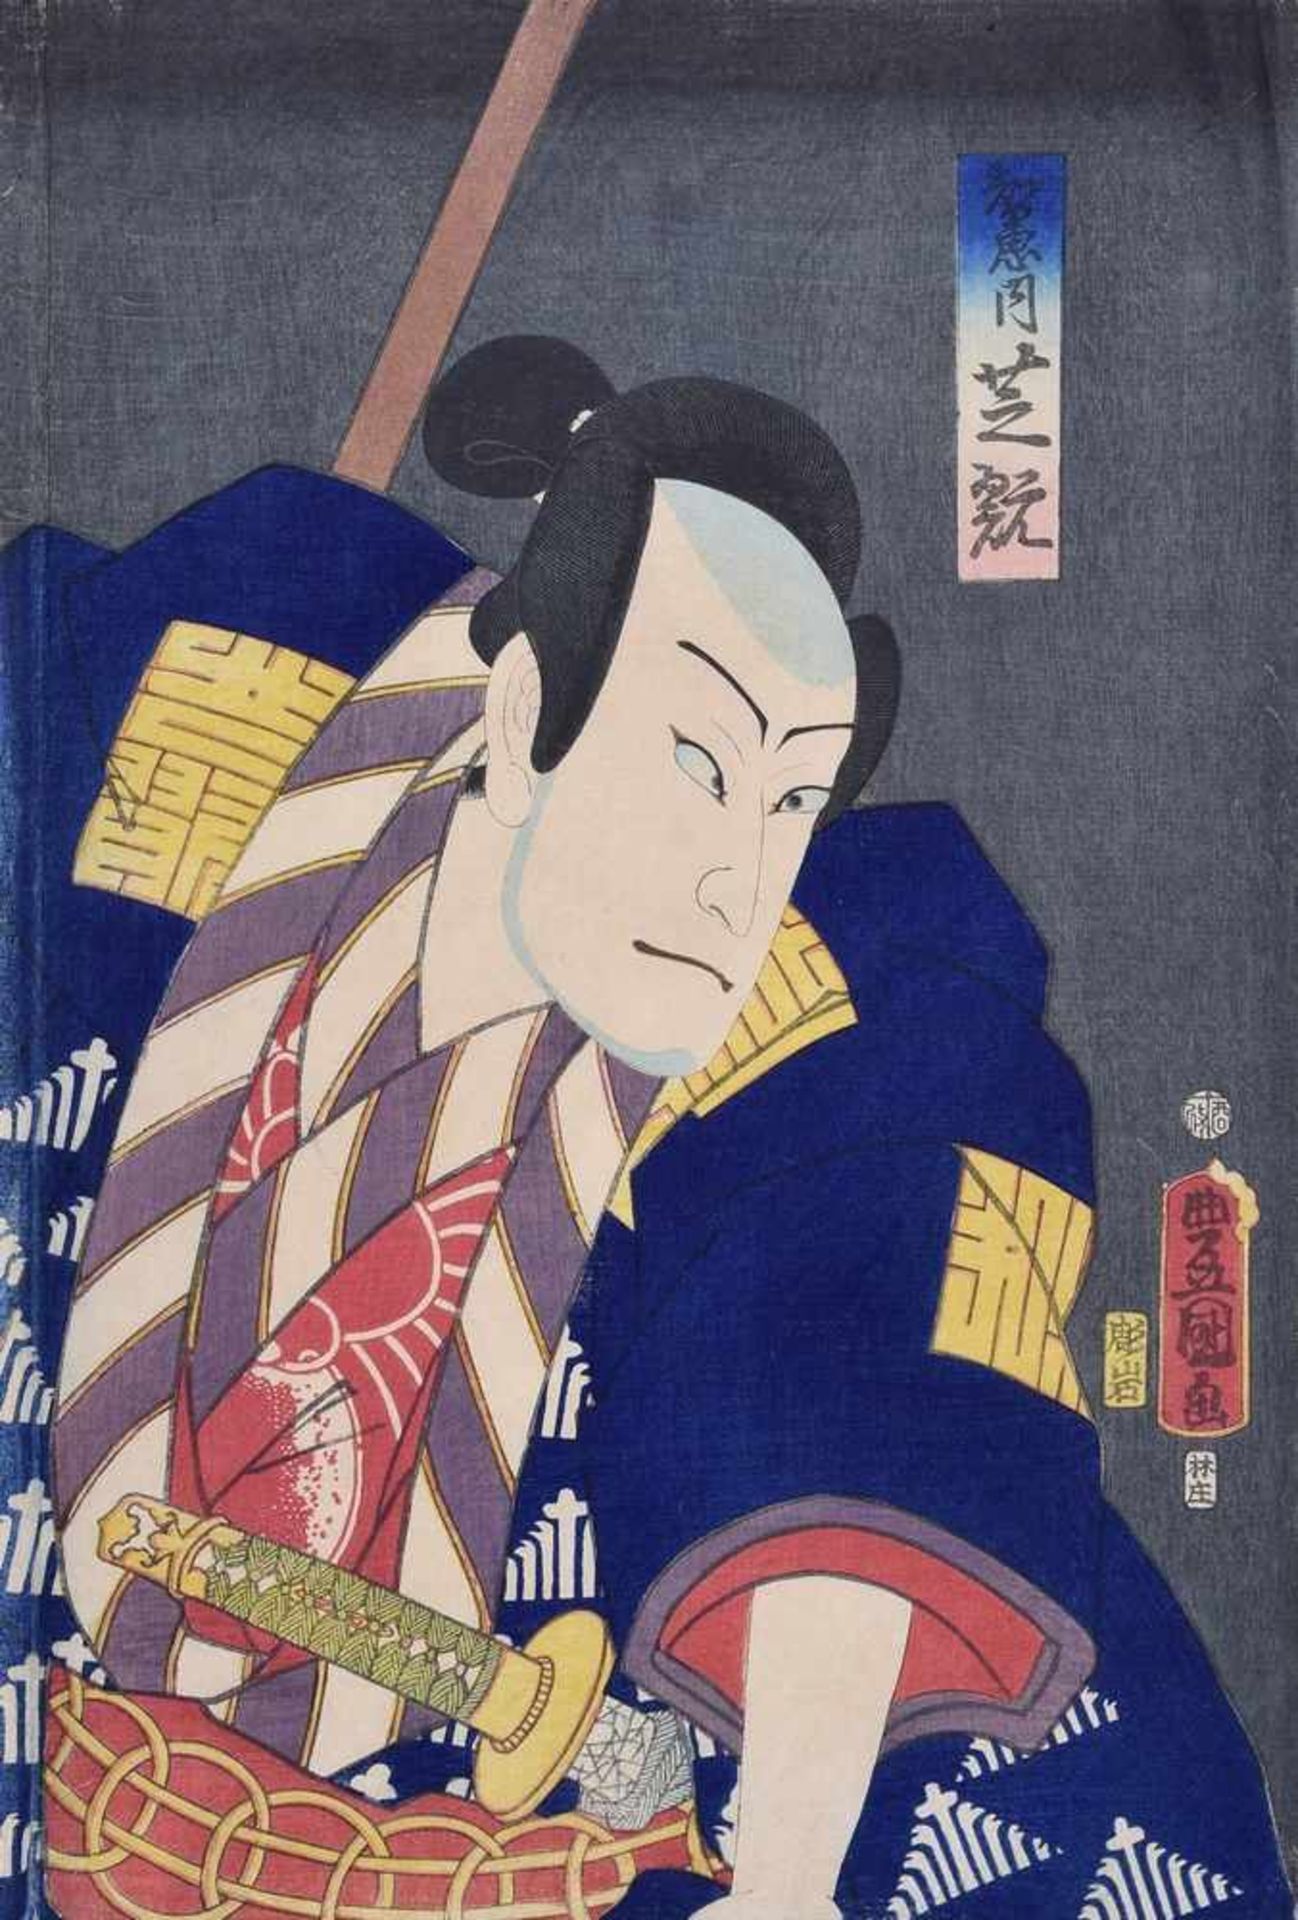 Kunisada, Utagawa (1786-1865) "Schauspieler", Farbholzschnitt, 36,5x25,5cm, leichte